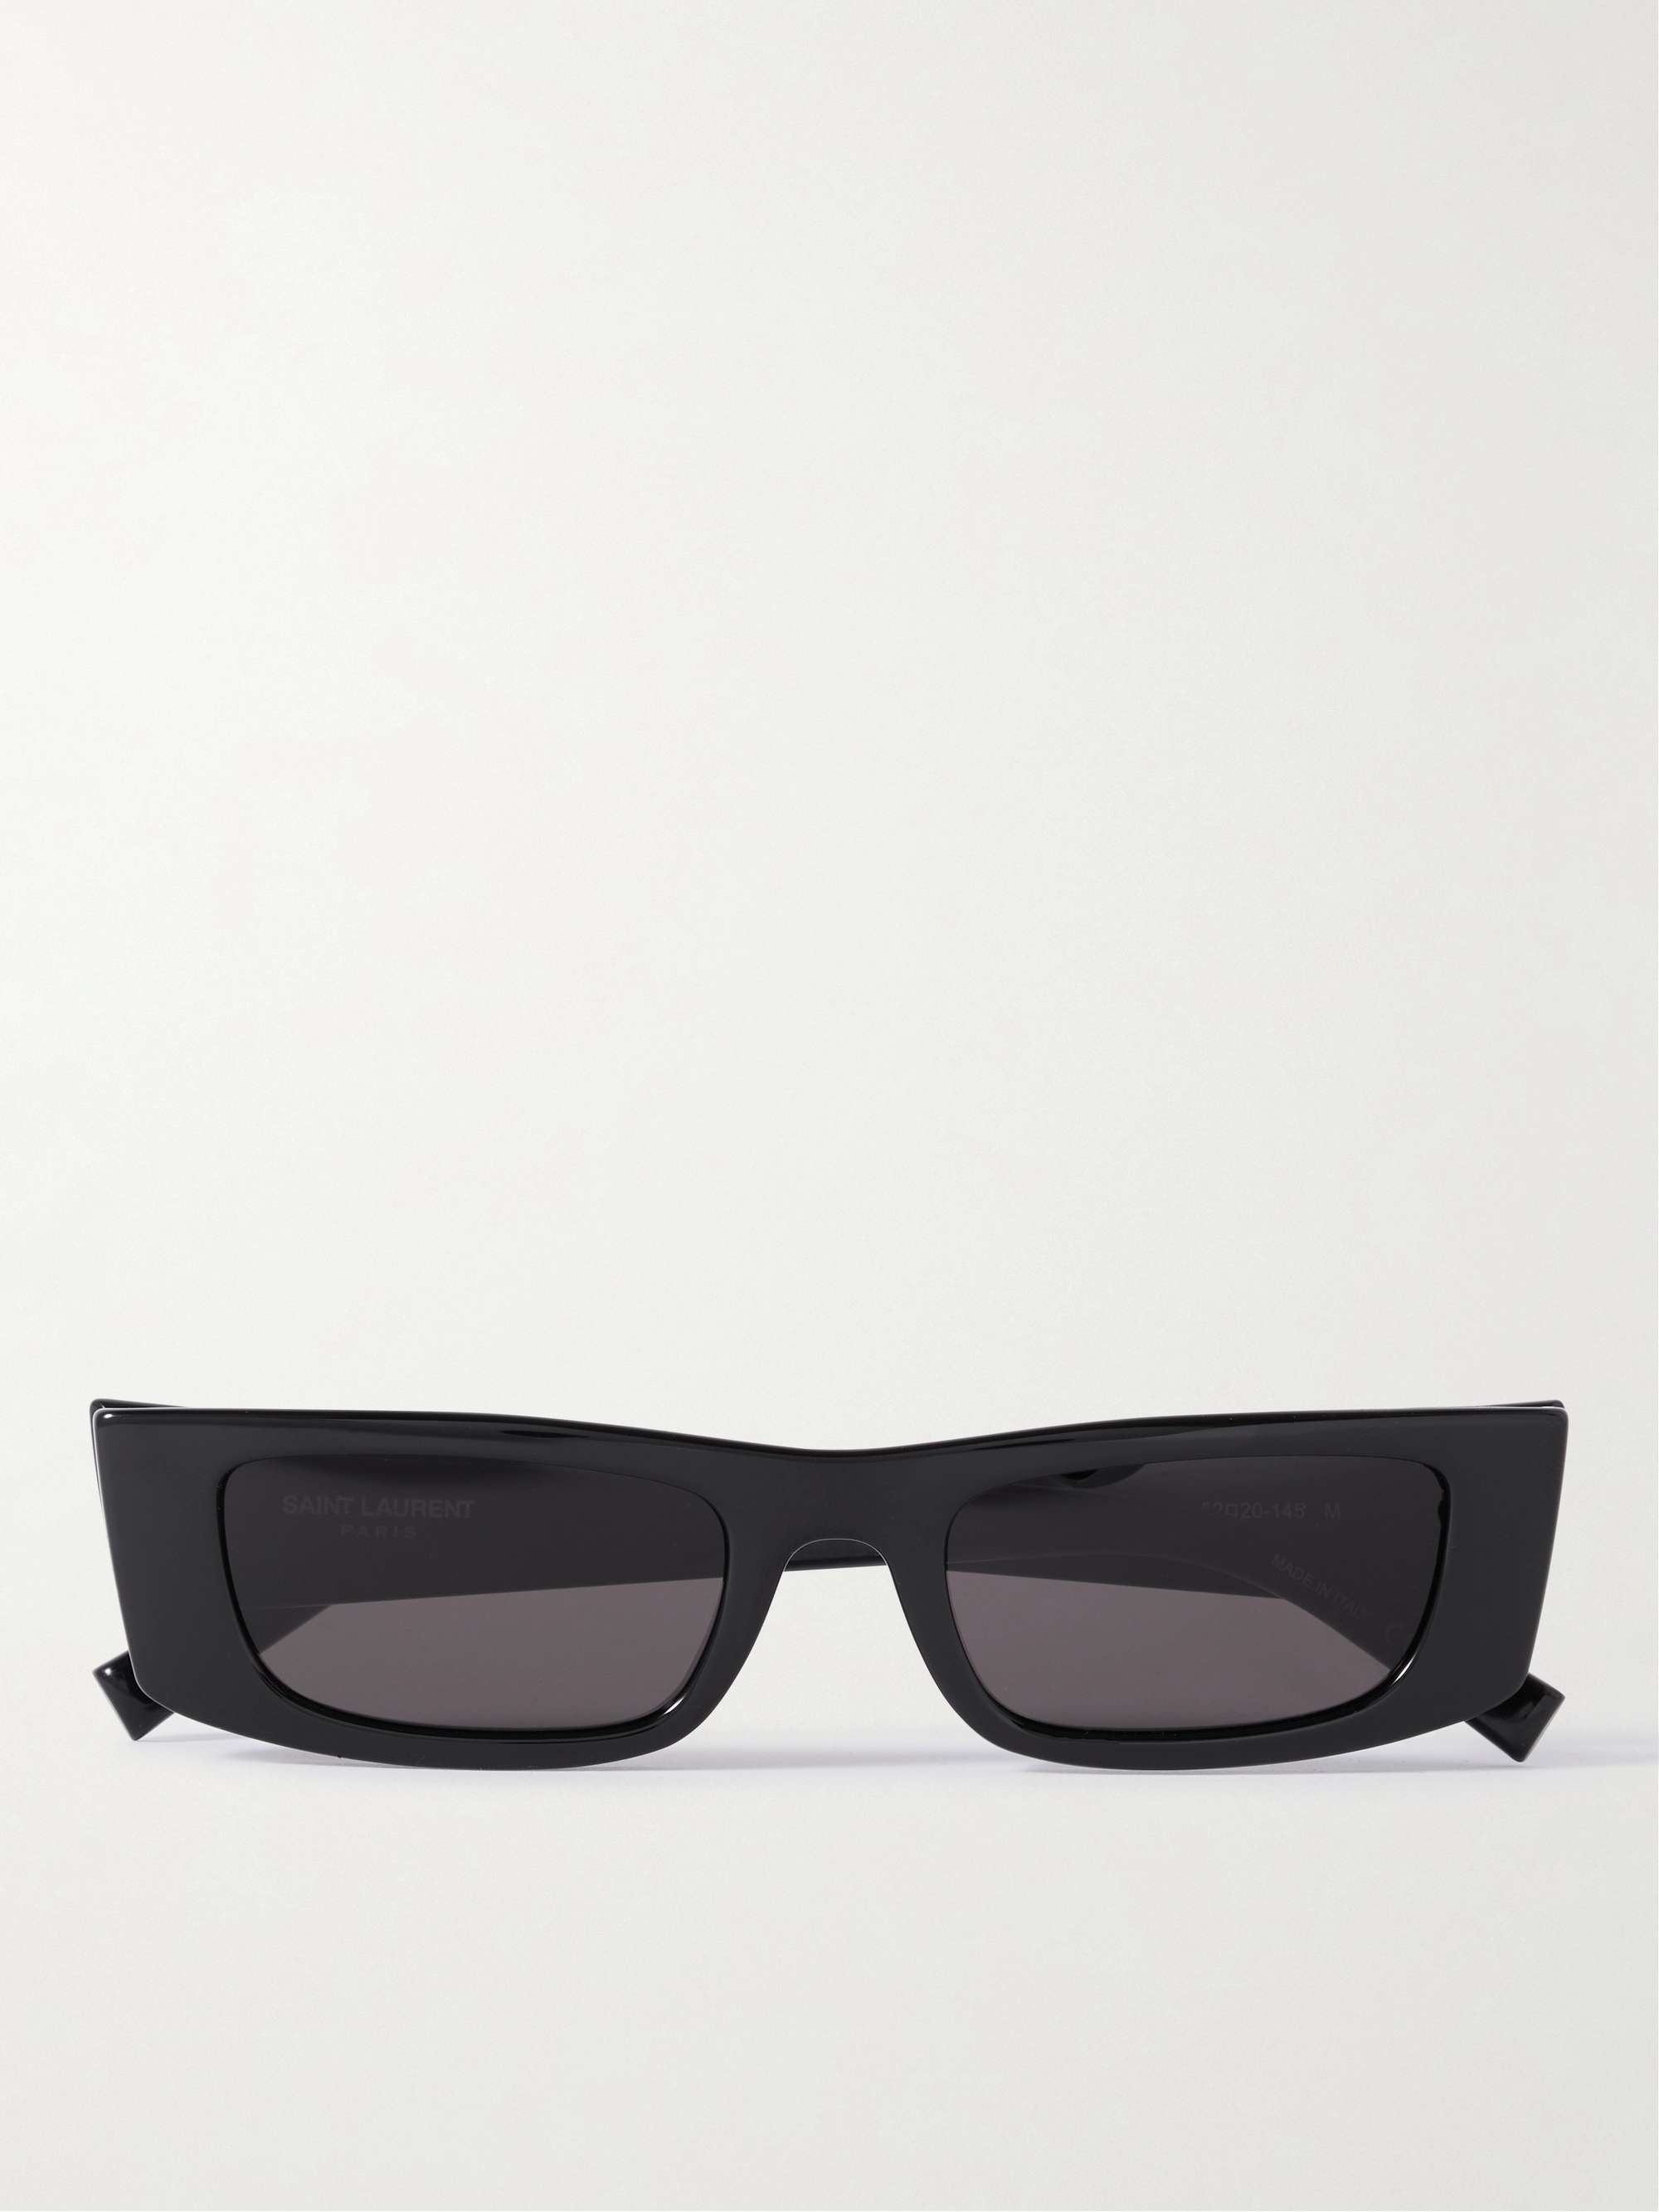 Men's Sunglasses  Mens sunglasses, Sunglasses, Black sunglasses square